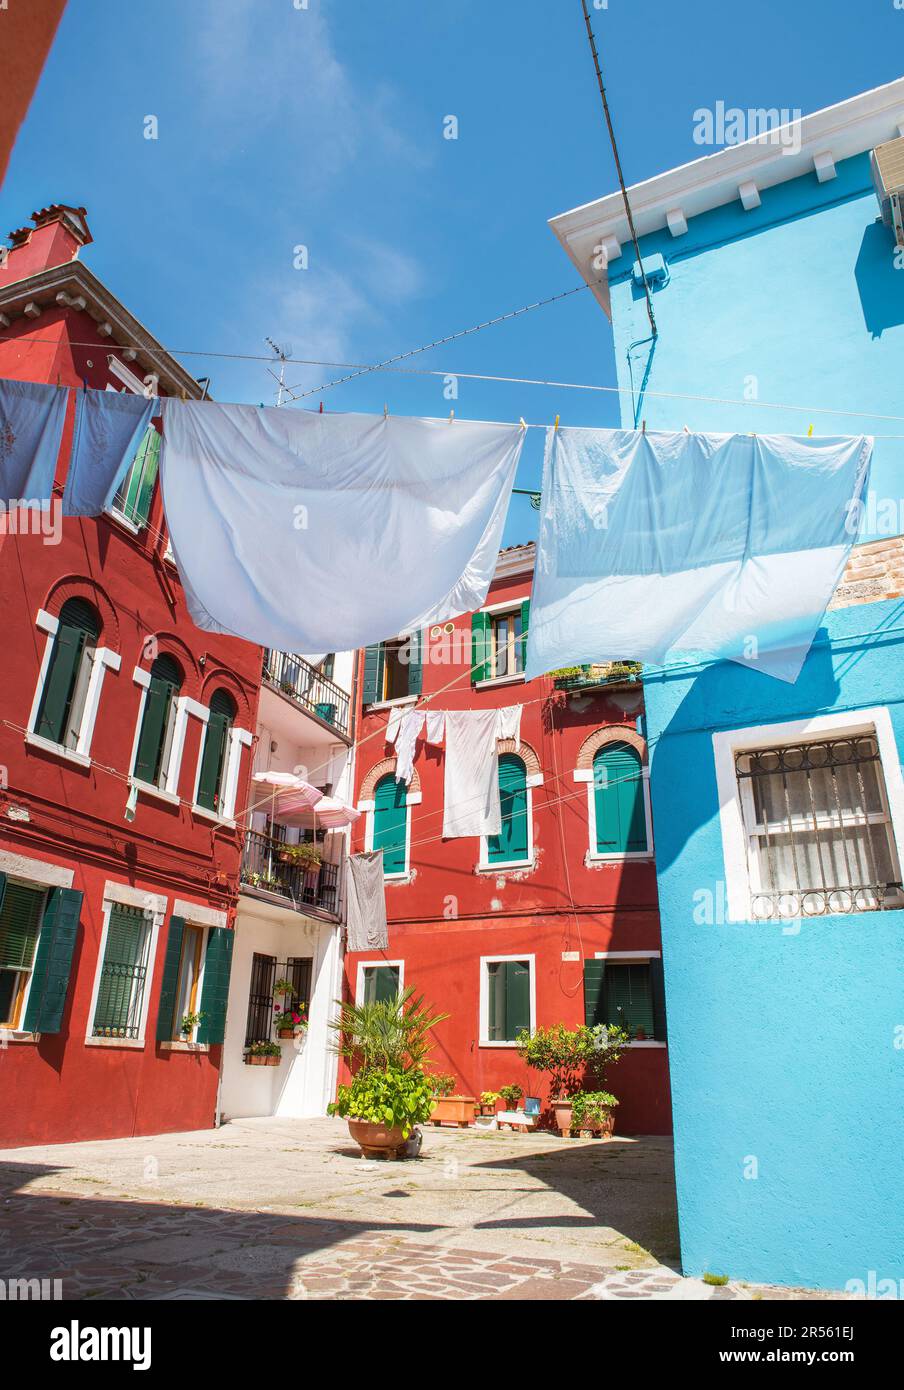 Étroites vieilles rues de l'île de Burano avec des maisons colorées et des draps de séchage à charnières, Venise, Italie. Destination de voyage très attrayante et célèbre. Banque D'Images